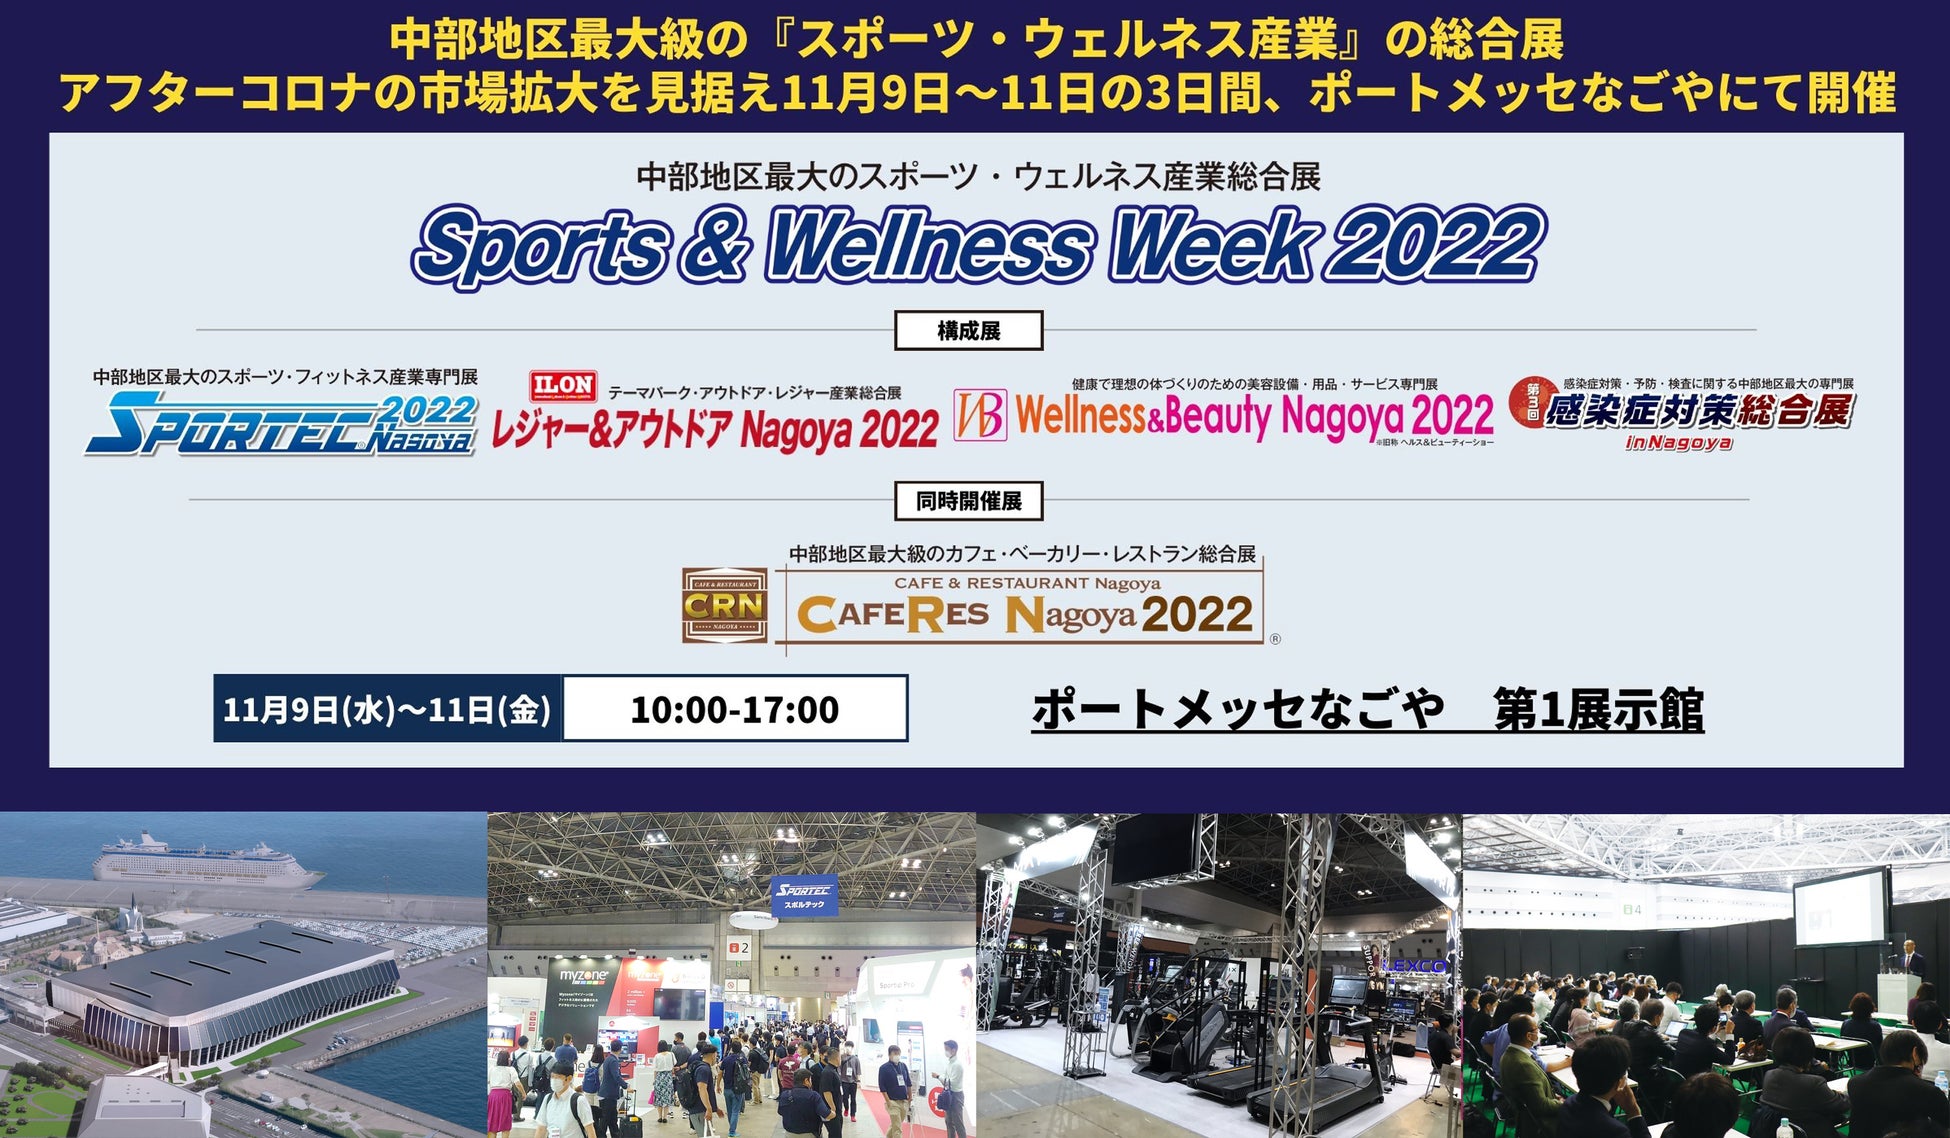 スポーツ・健康産業に関わる有力企業350社が名古屋に集結！中部地区最大級のスポーツ・美容・レジャーの総合展示会がいよいよ開催！